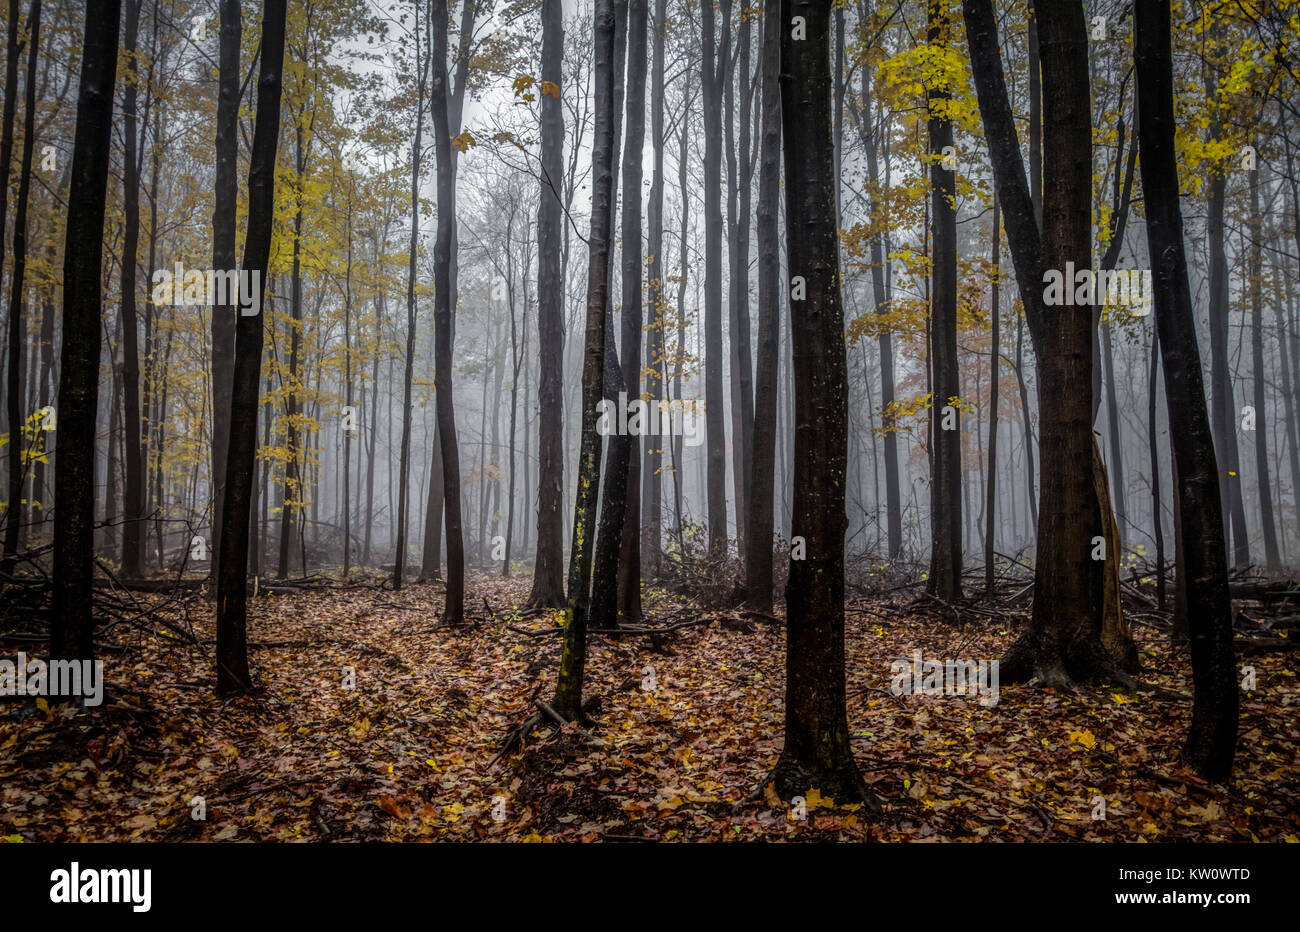 Michigan Vue panoramique du paysage forestier de l'automne. Brouillard sombre avec des forêts naturelles et dynamiques panorama forêt d'automne dans les bois du nord du Michigan. Banque D'Images